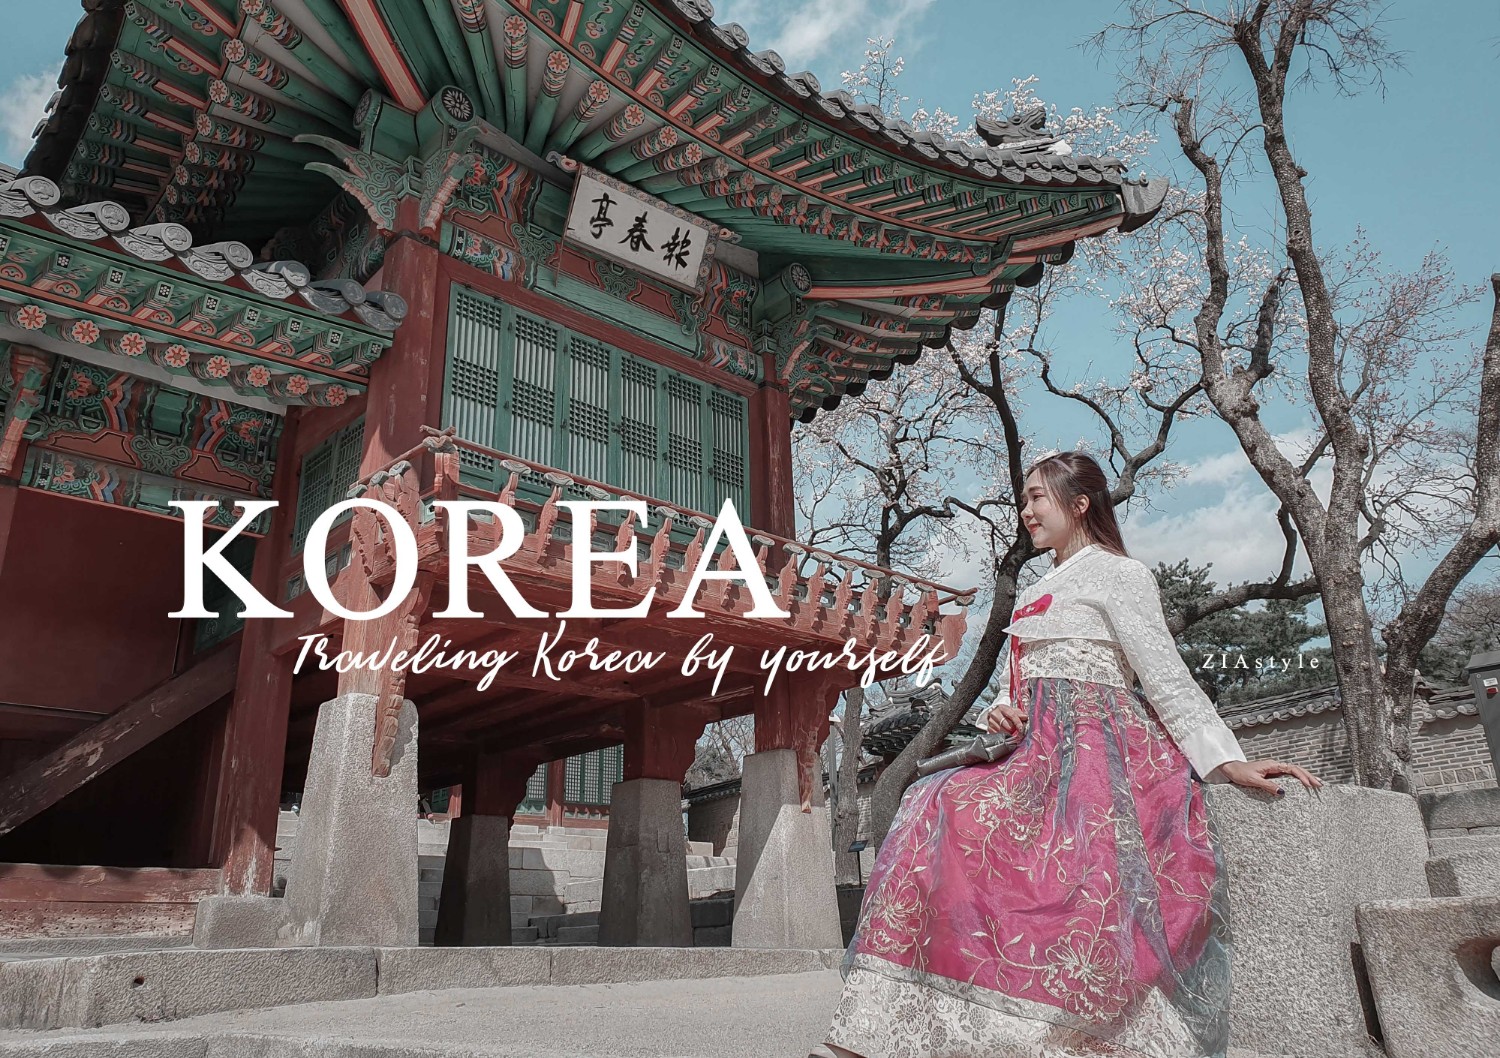 รีวิว เที่ยวเกาหลี ด้วยตัวเอง 10 วันเต็มกับอารยธรรมโชซอน  ผสานความสวยงามโลกสีชมพูของซารุกะเกาหลี - Pantip